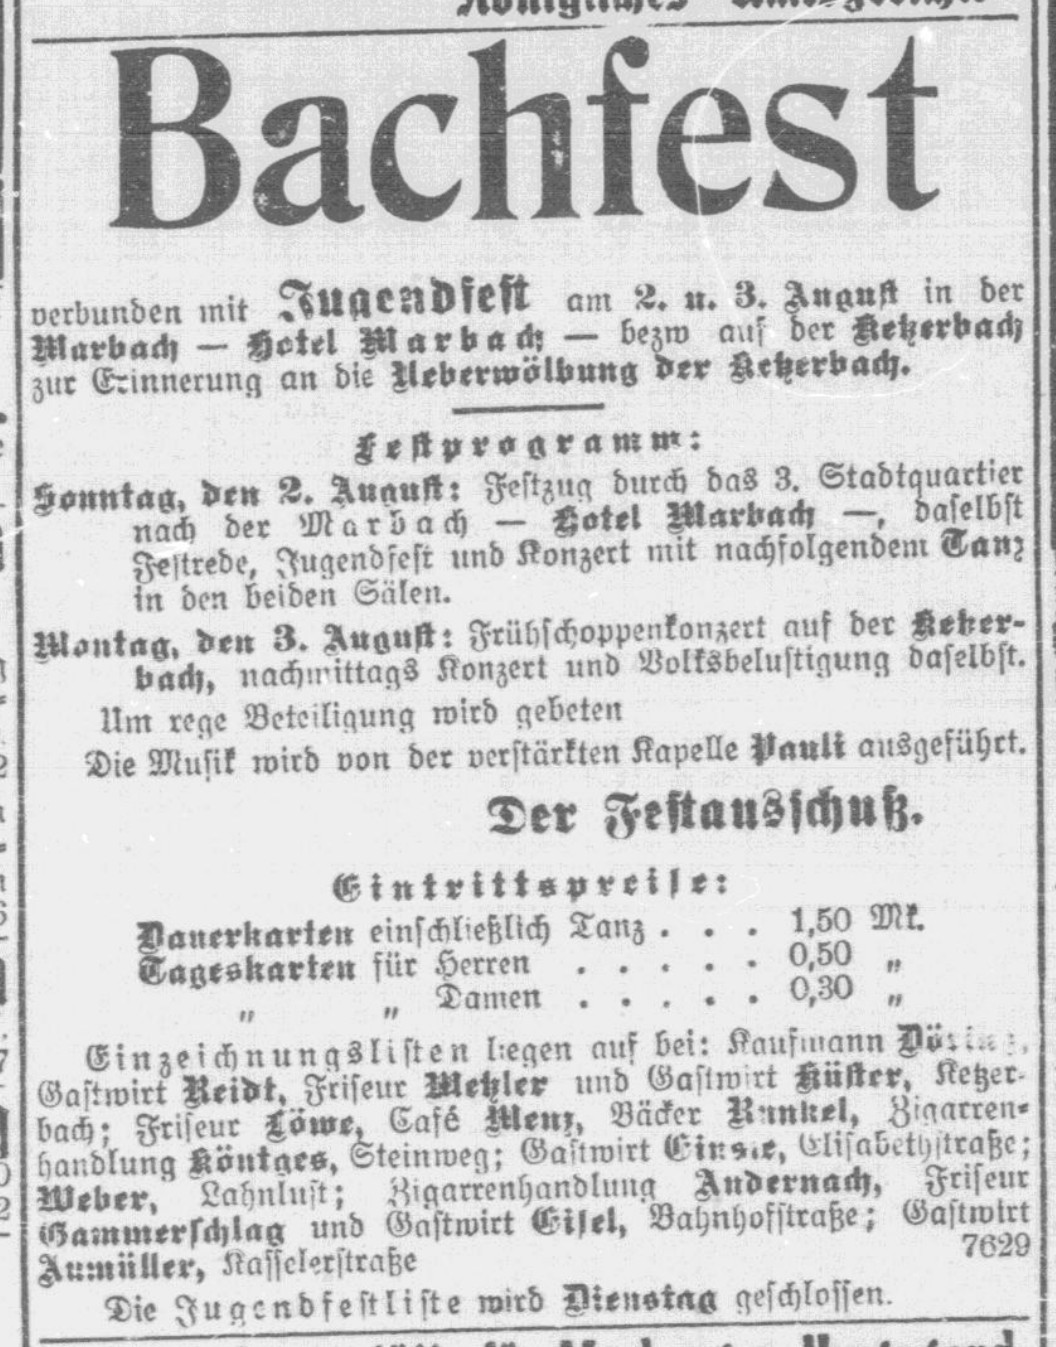 Bachfest 1914